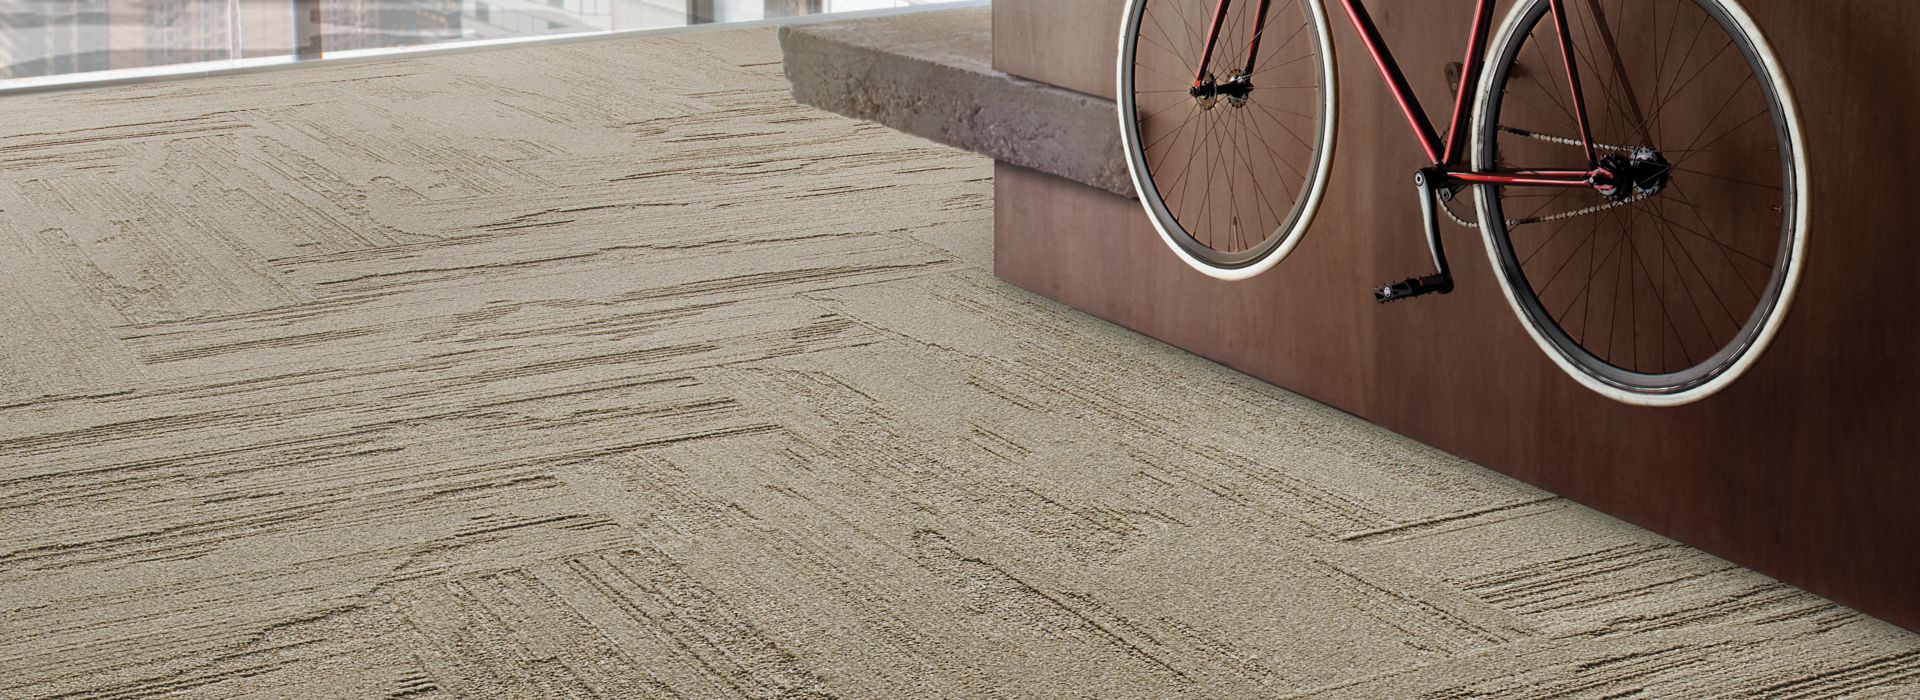 Interface UR501 plank carpet tile in office common area with bike  número de imagen 1